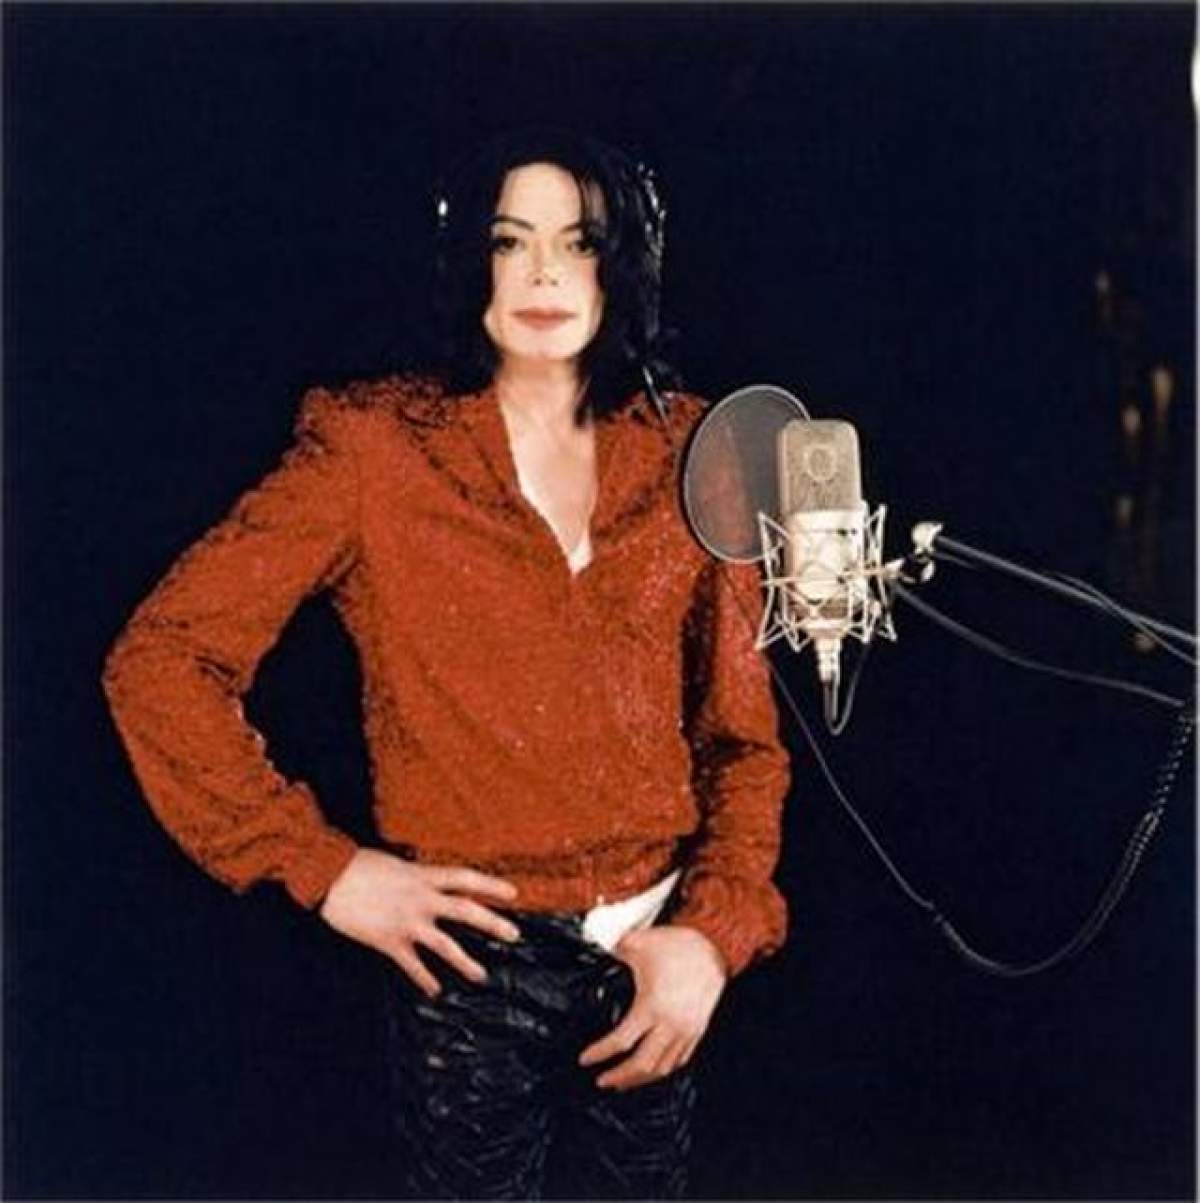 Detalii incredibile despre ultimele clipe din viaţa lui Michael Jackson! Ce povestesc menajerele este dezgustător